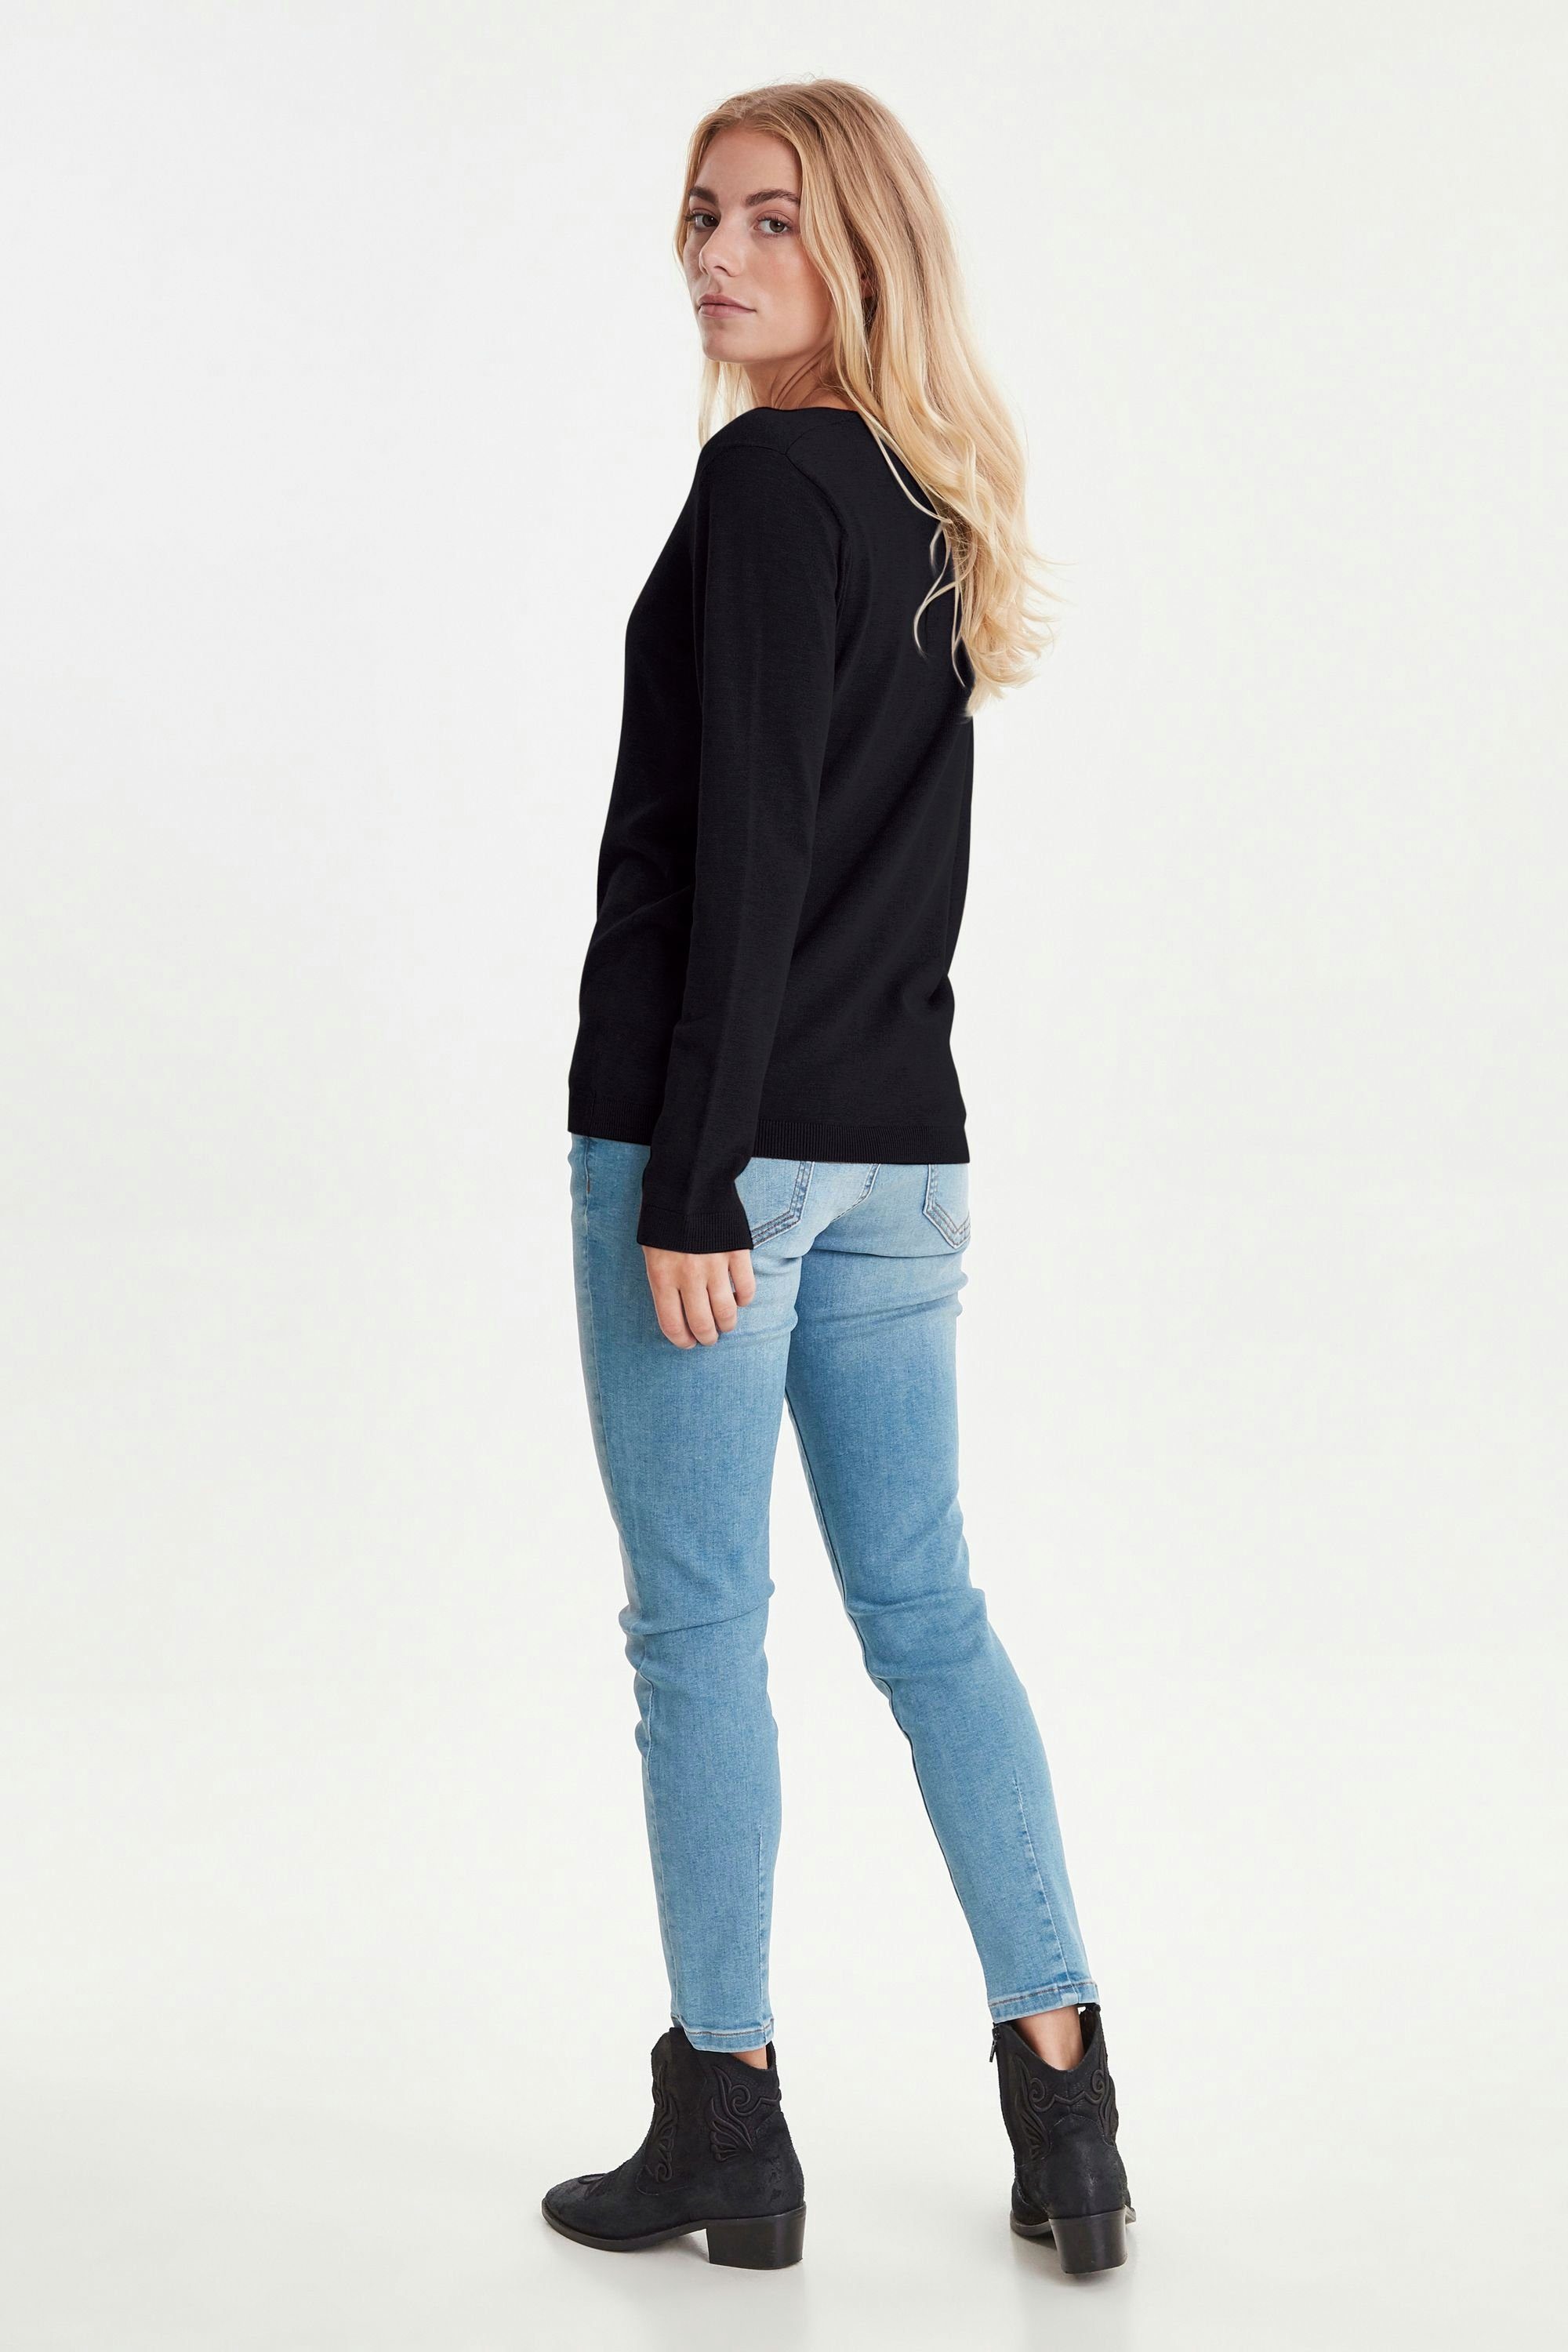 - (5000199) PZSARA Femininer Strickpullover Jeans Black mit V-Ausschnitt 50204127 Pulz Pullover